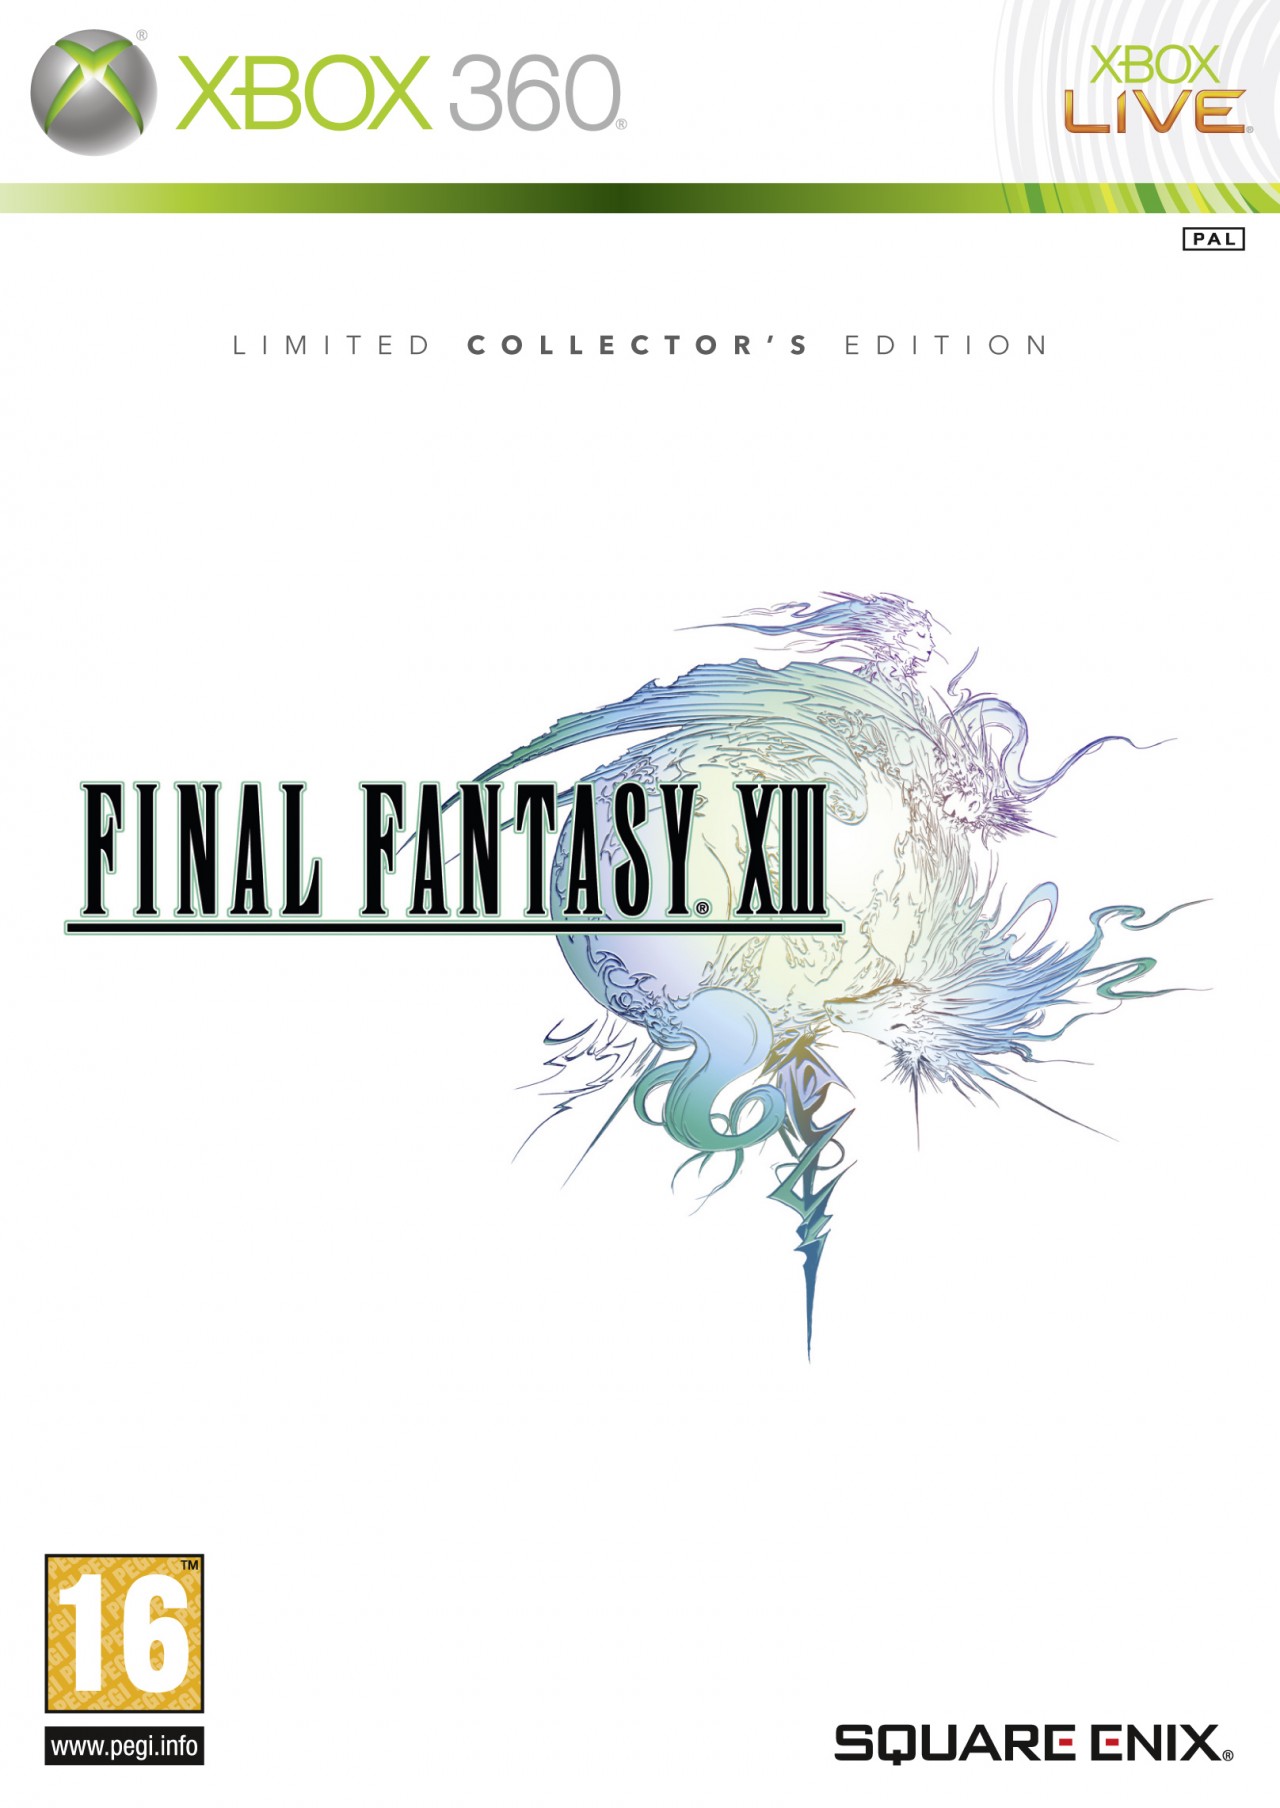 Condición Bangladesh Fanático Final Fantasy XIII: comprar nuevo y segunda mano: Ultimagame